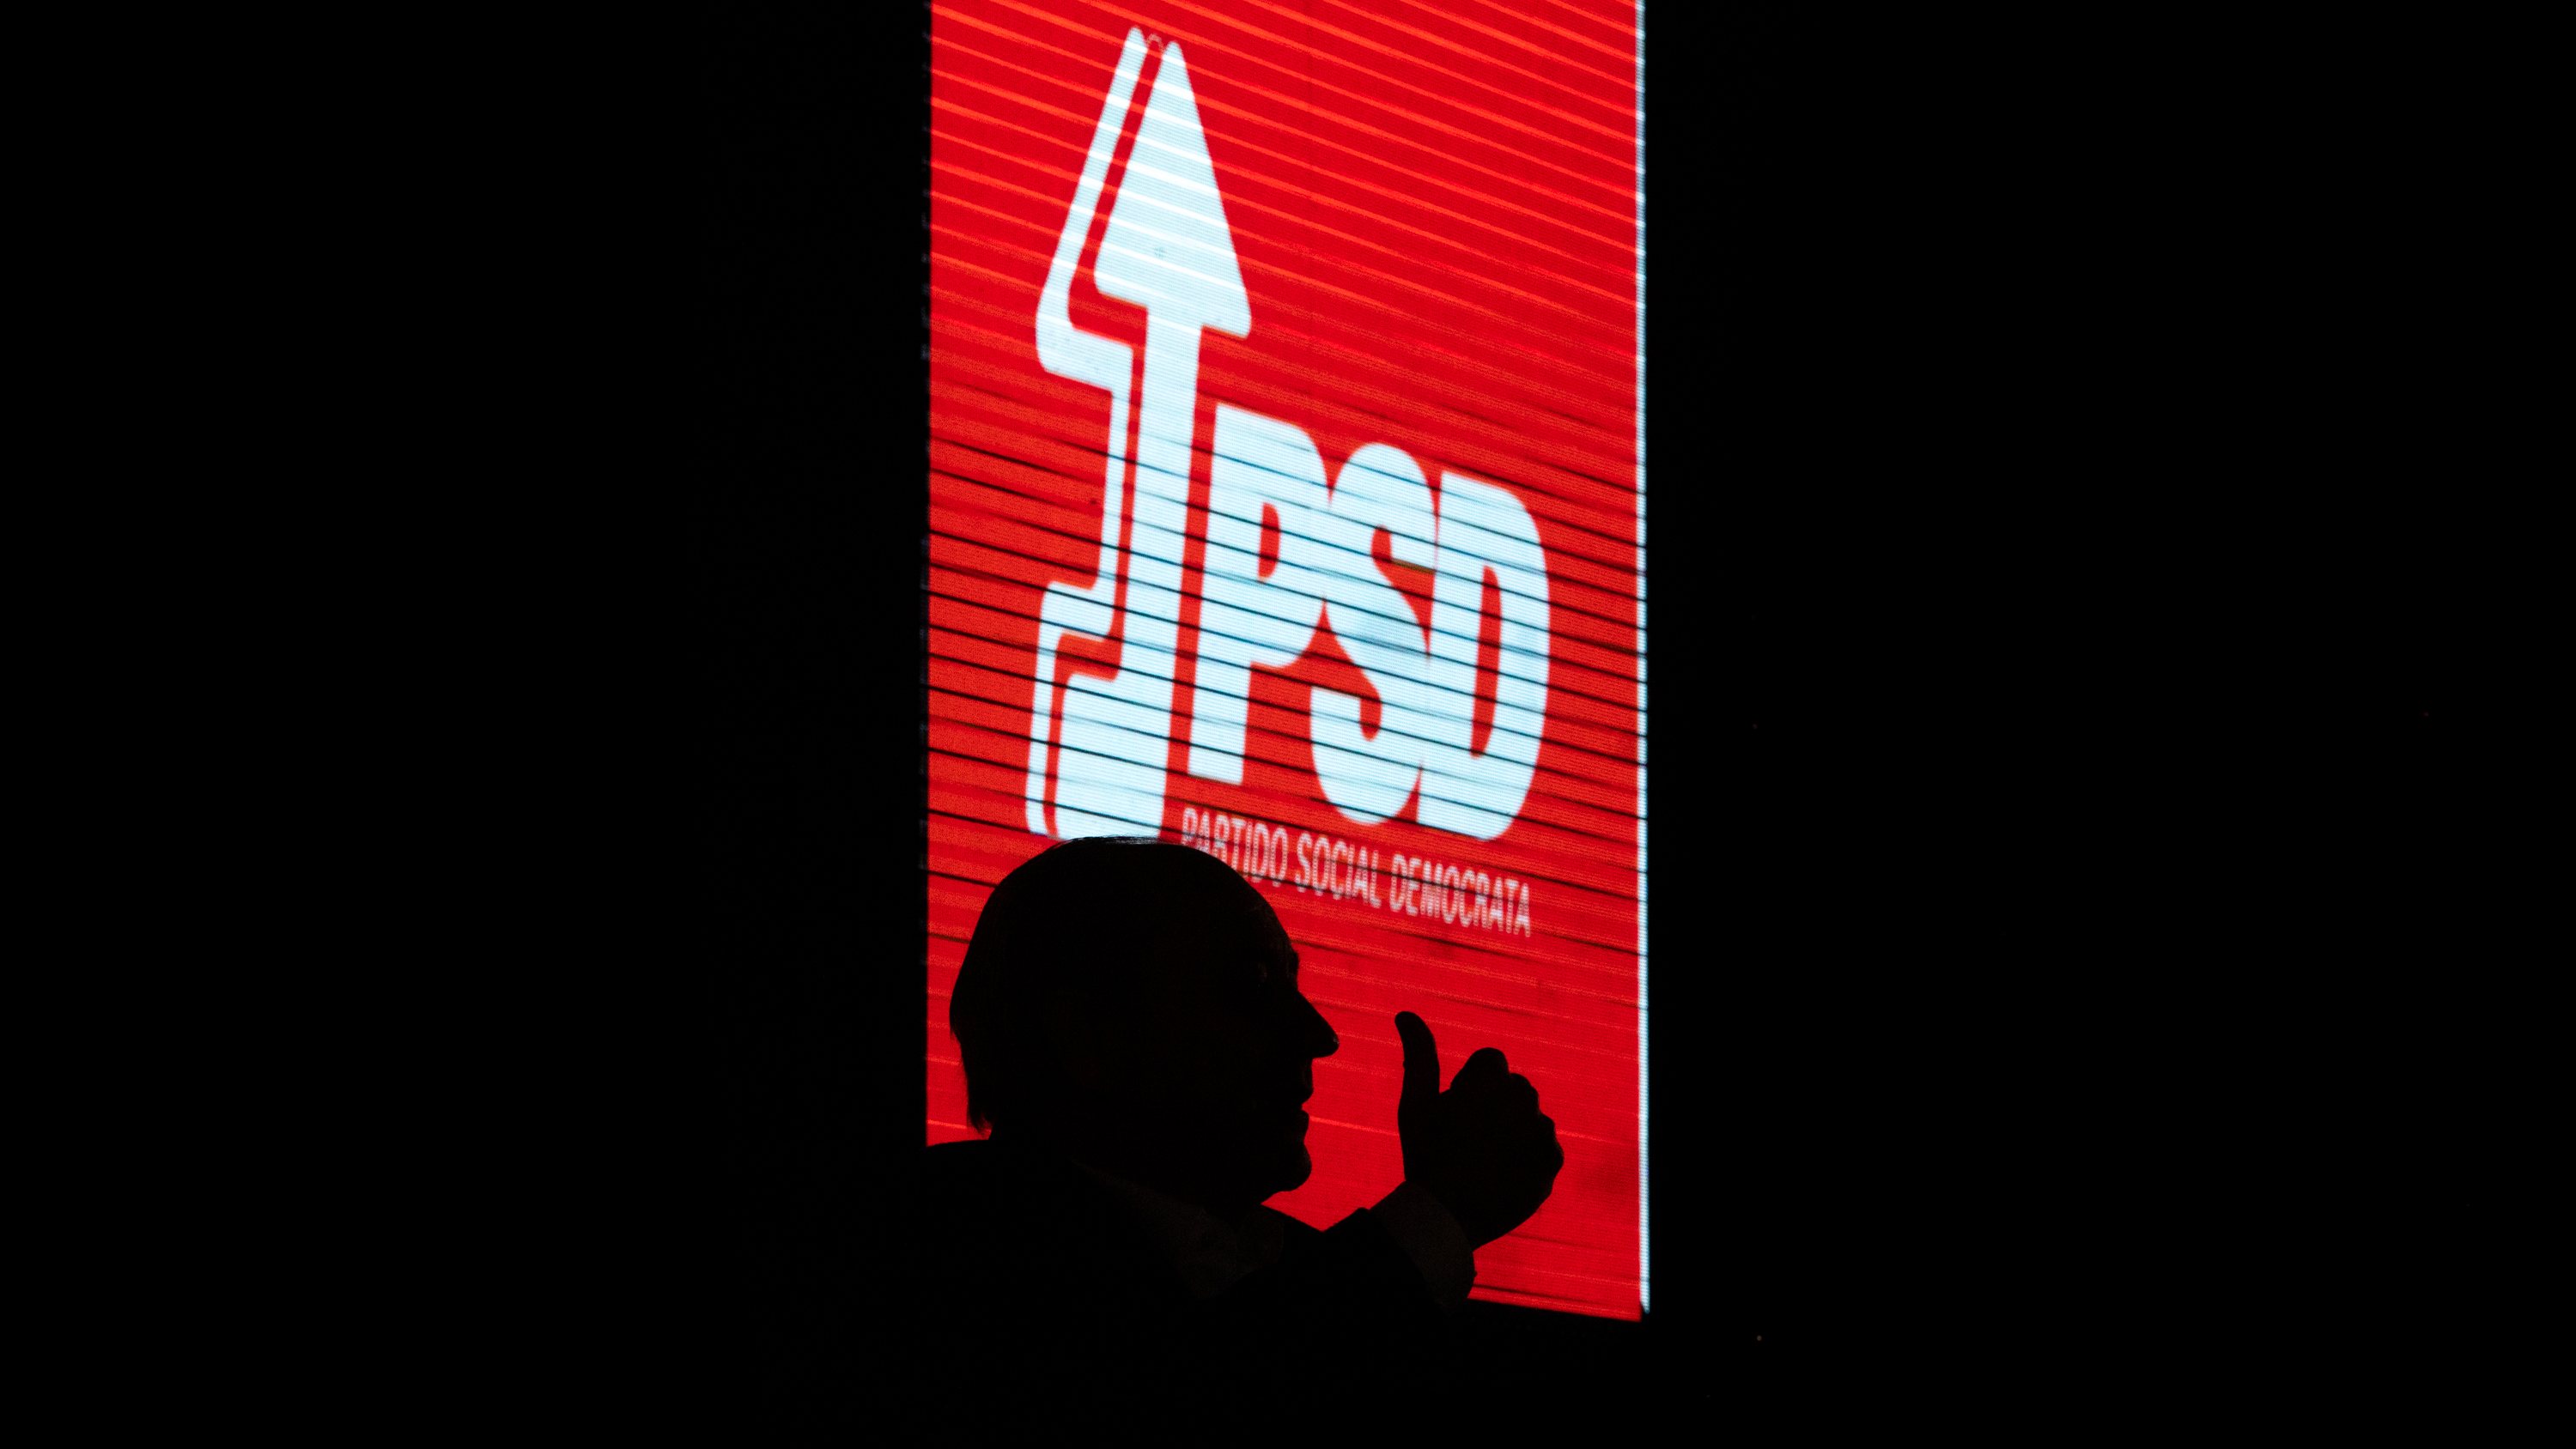 ELEIÇOES LEGISLATIVAS: Rui Rio, lider do Partido Social Democrata (PSD), durante uma sessão de esclarecimentos em Leiria. As eleições legislativas realizam-se no próximo dia 30 de Janeiro. 26 de Janeiro de 2022, Leiria TOMÁS SILVA/OBSERVADOR